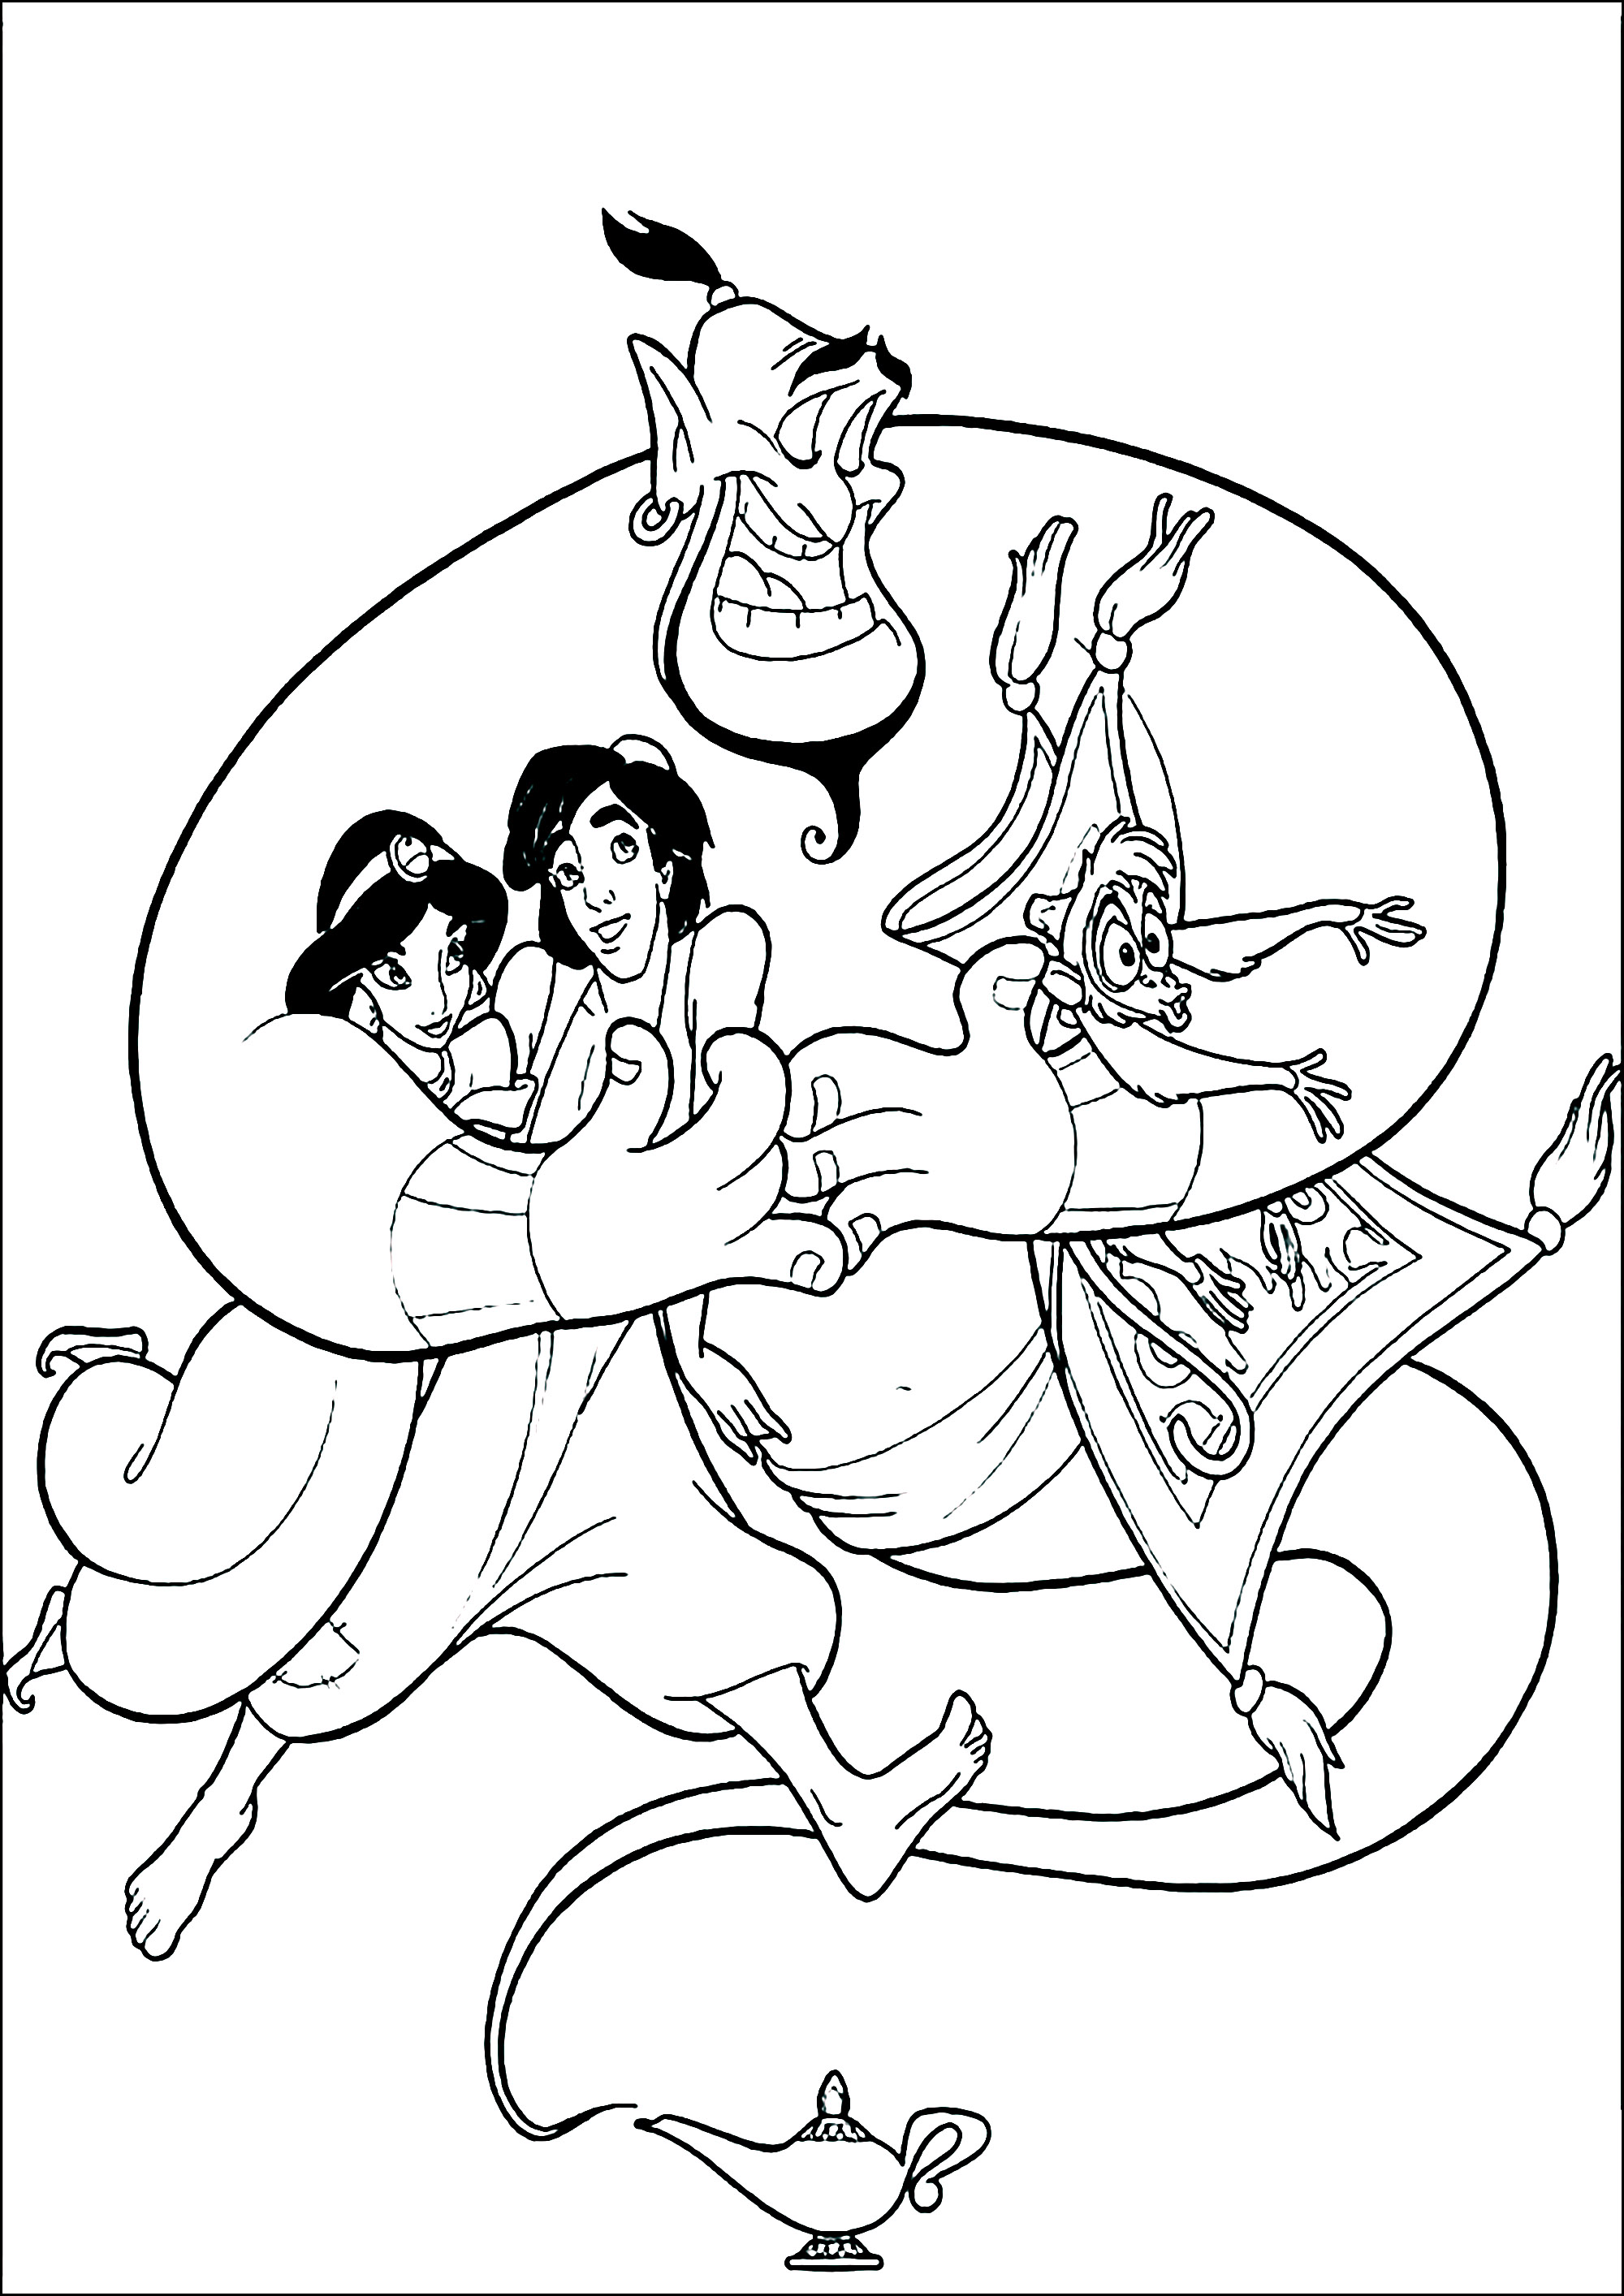 Aladdin, The Genie, Jasmine and Abu